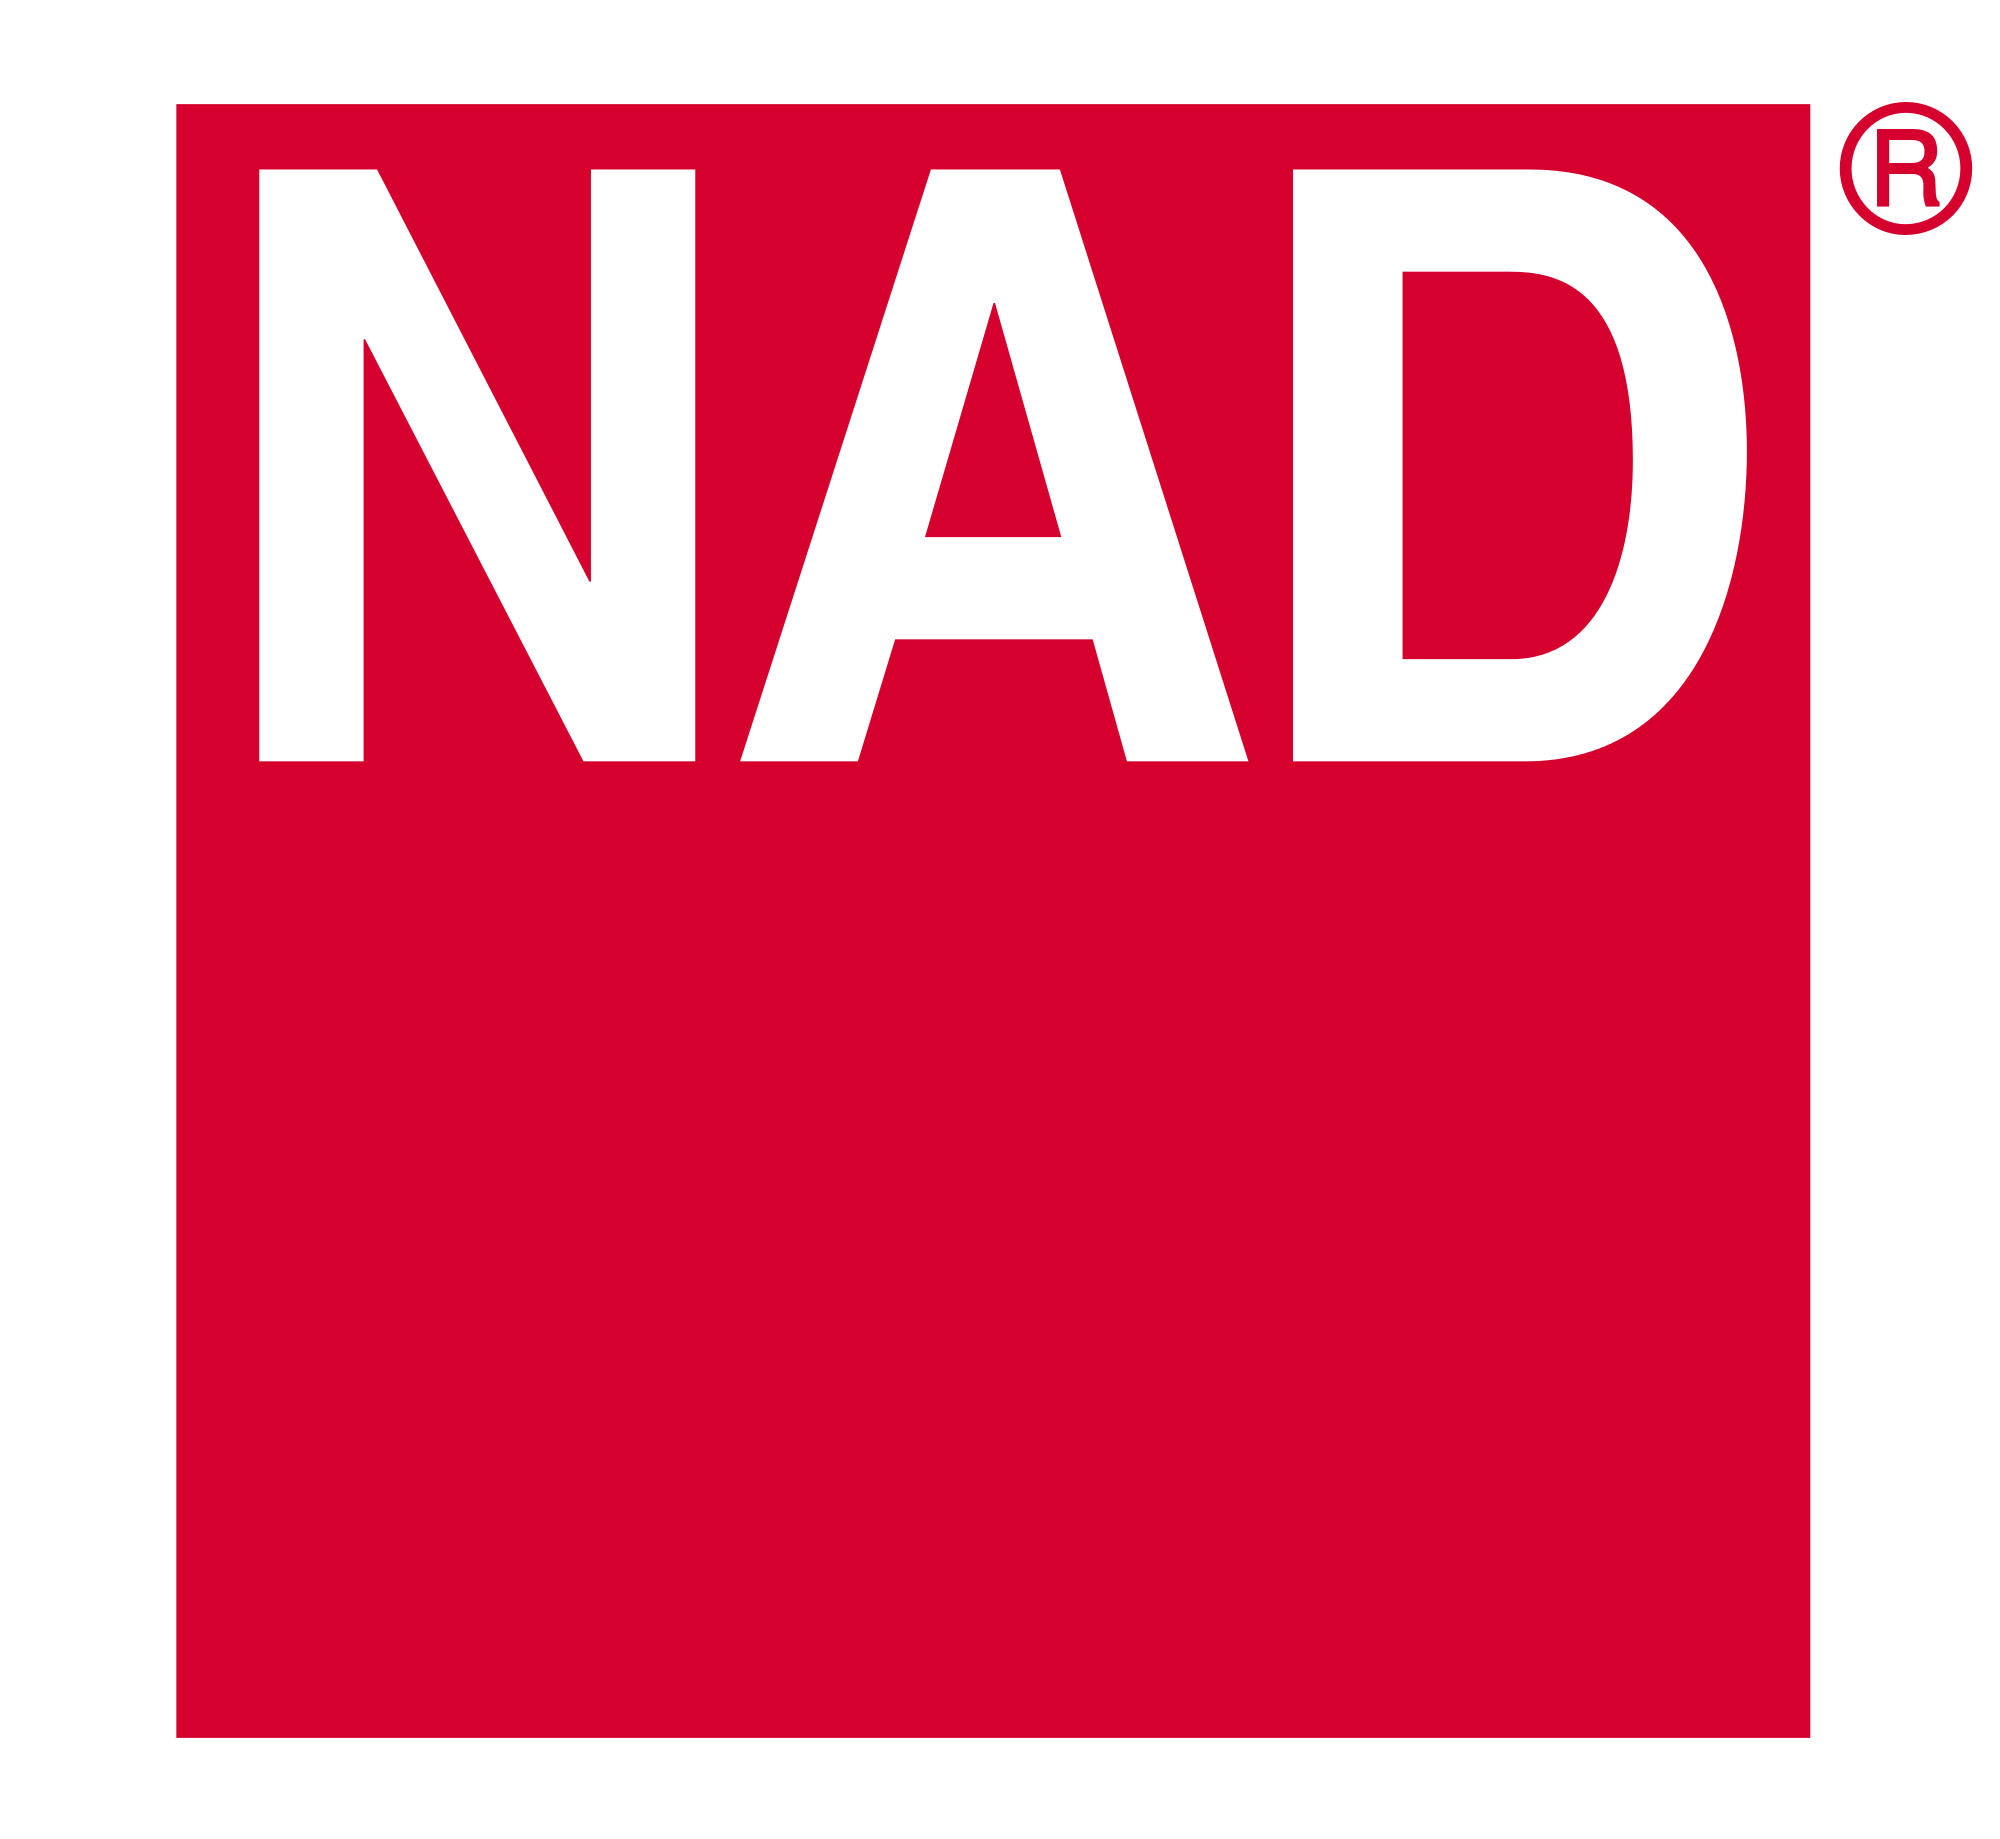 NAD в России - магазин, новости, обзоры, интервью, видео, фото, обсуждение.